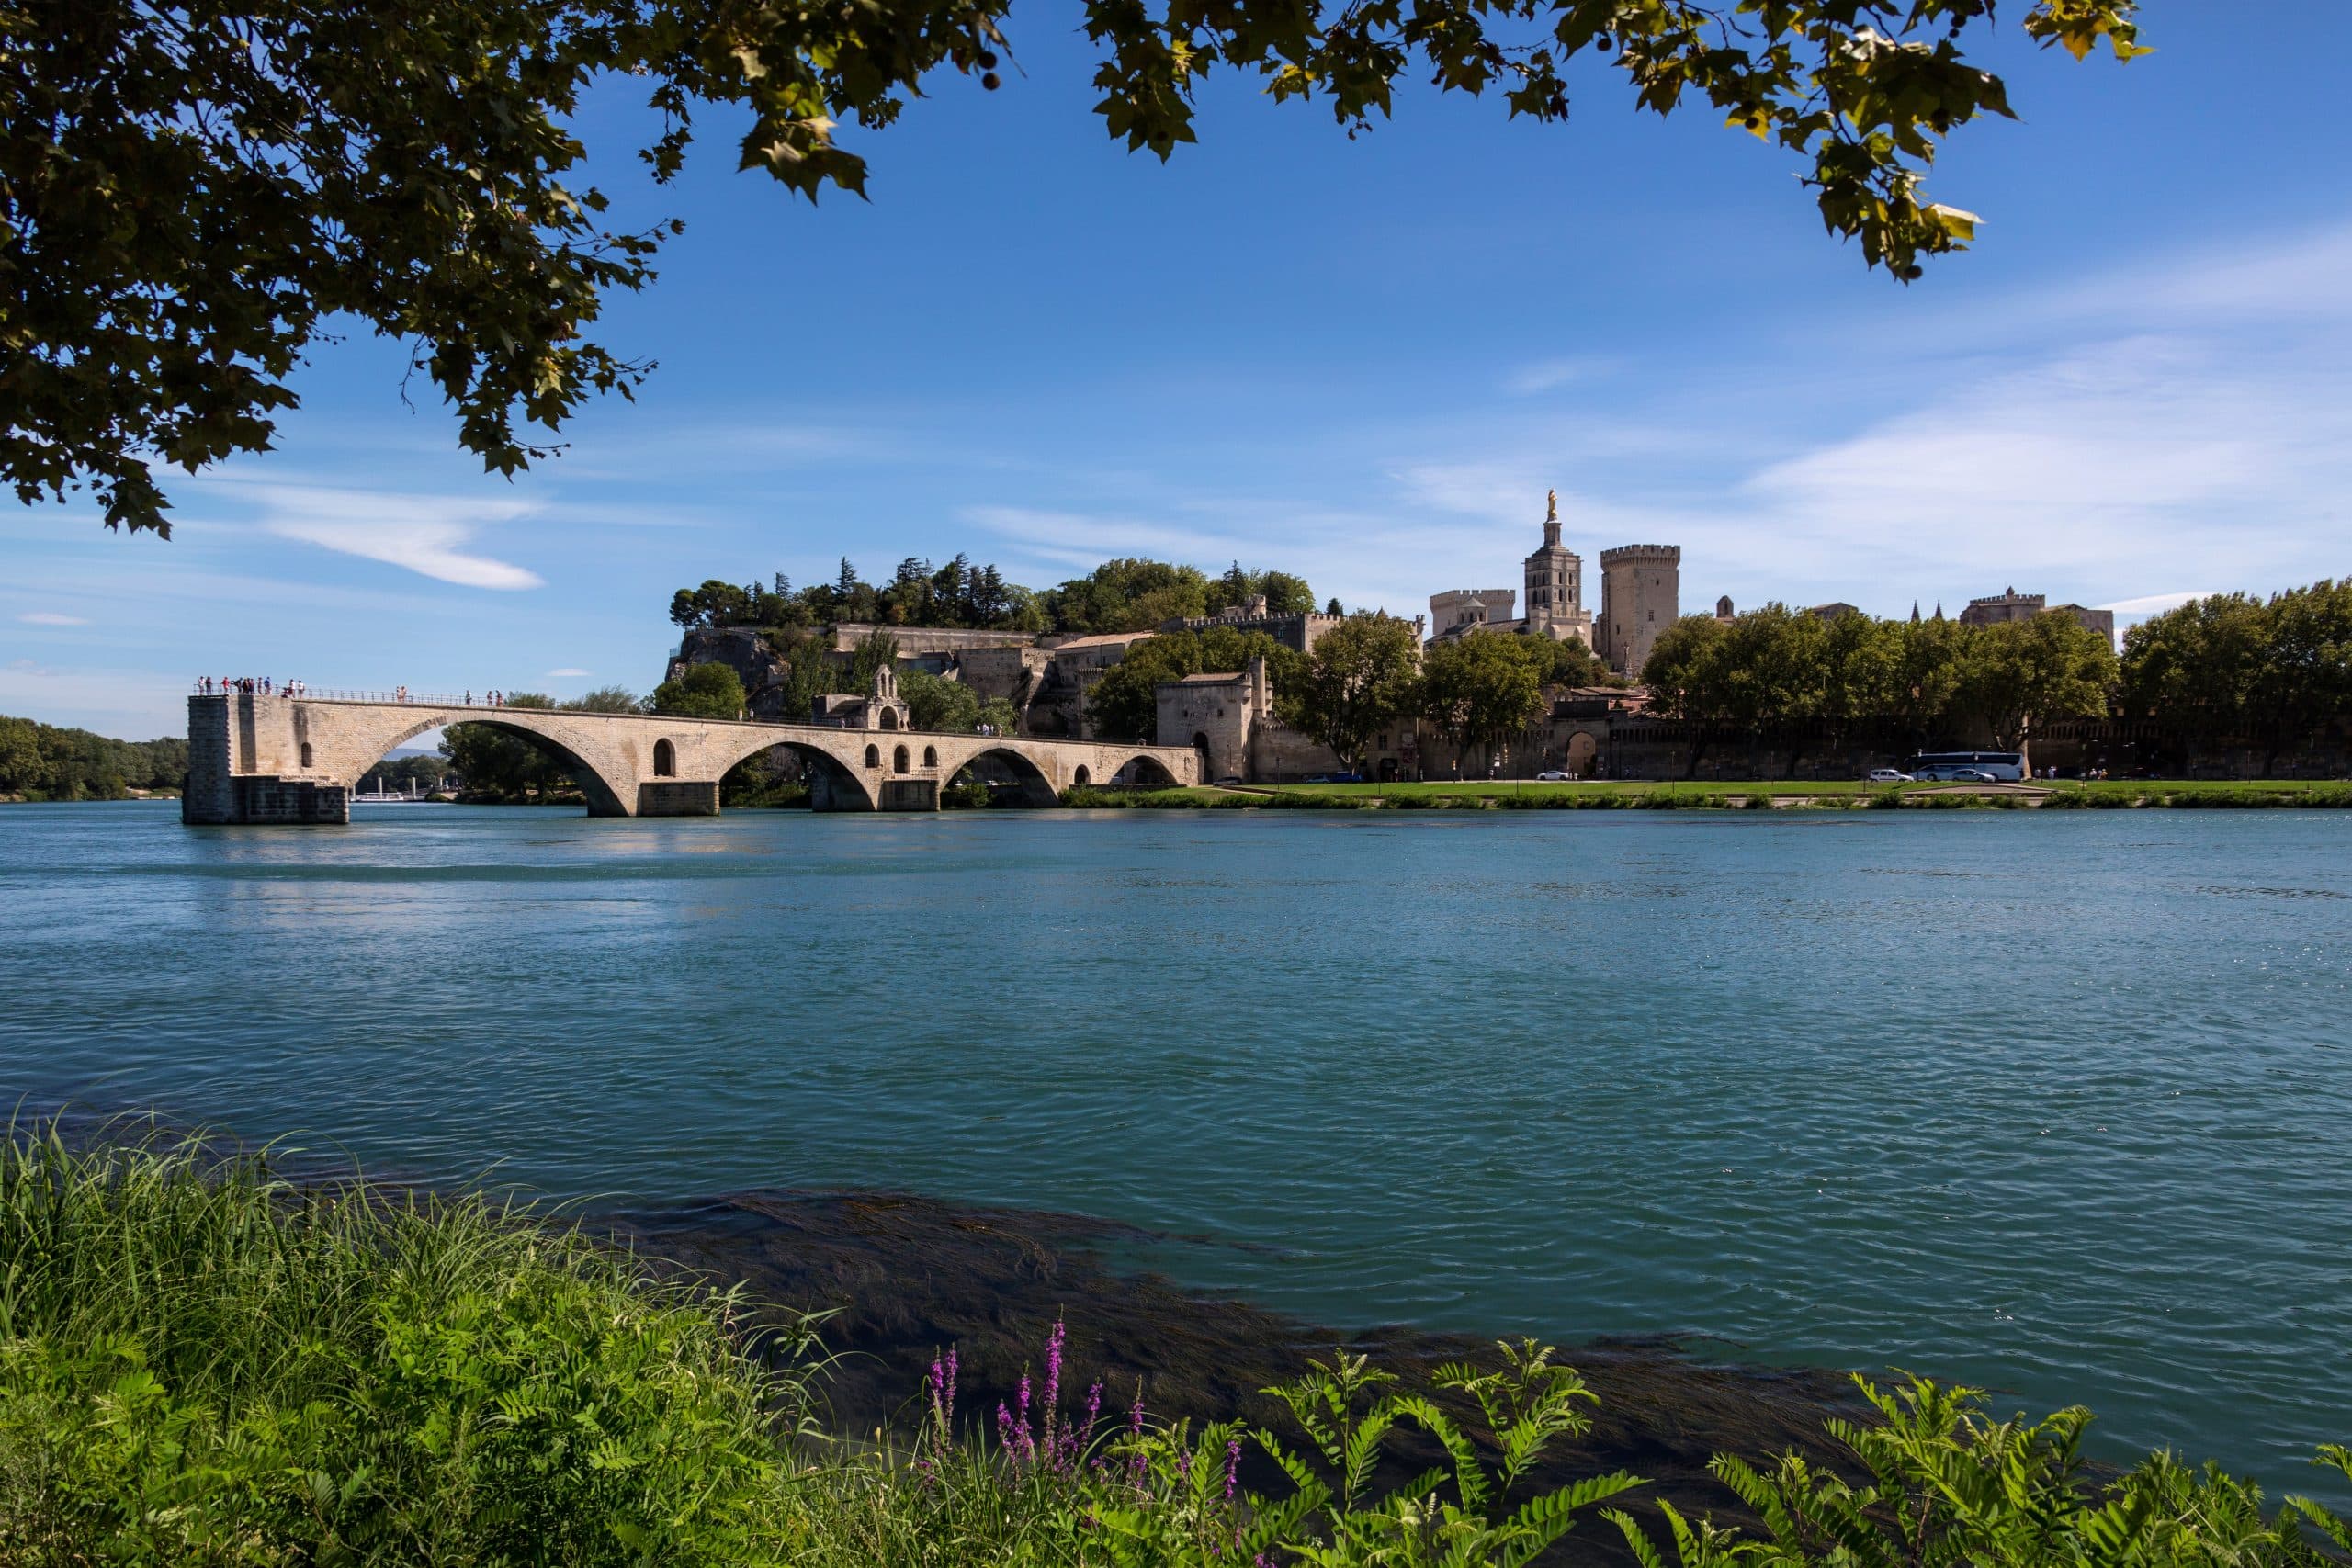 Découvrez les merveilles d’Avignon pour un séjour inoubliable sur https://avignonlesite.com